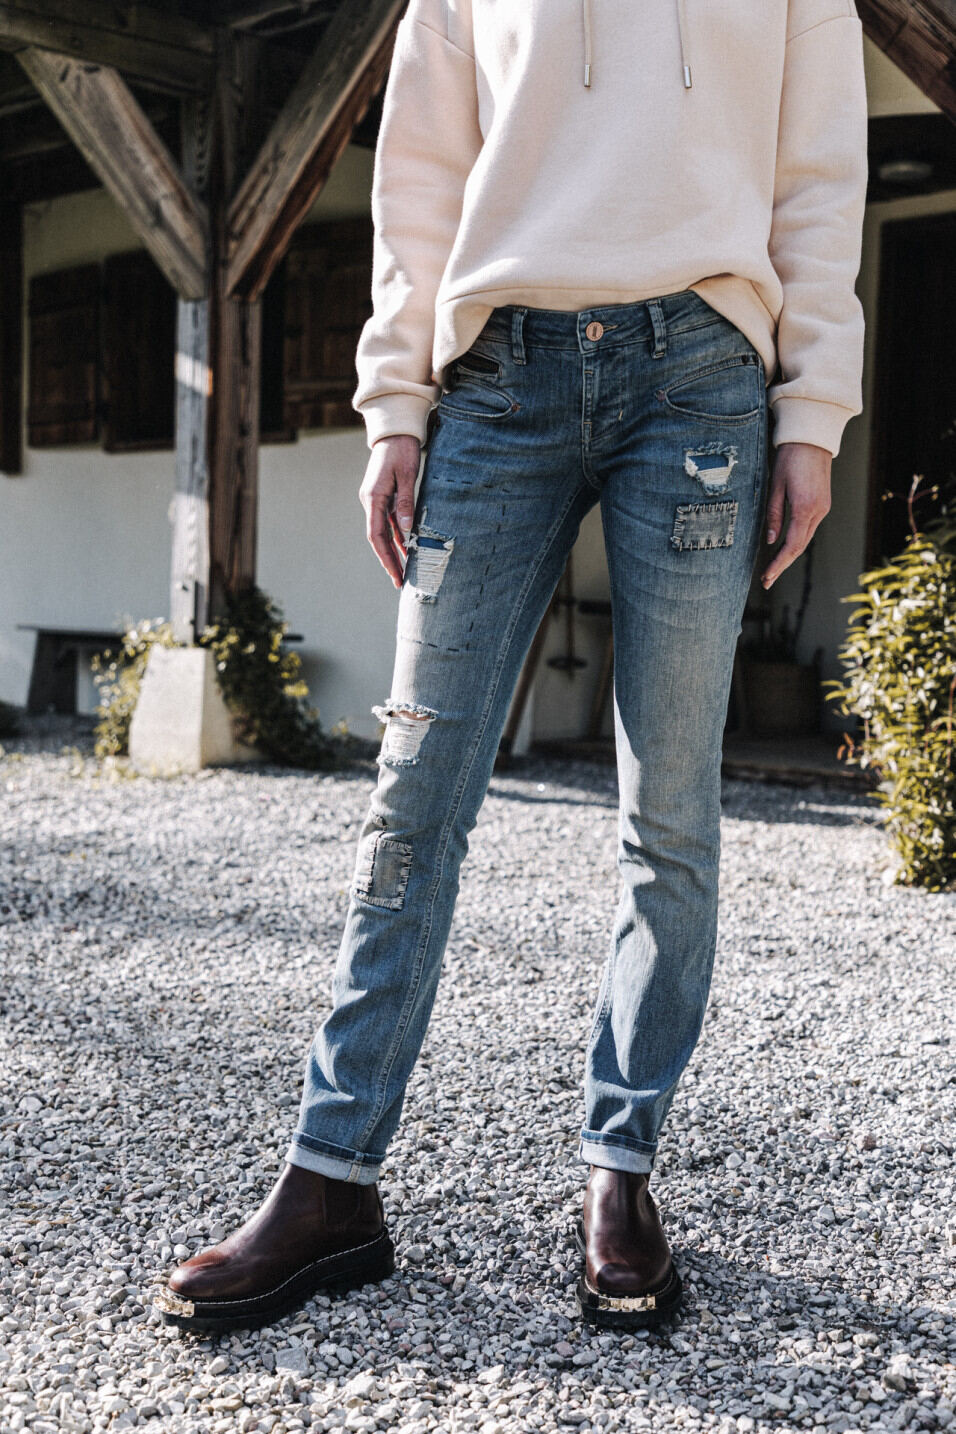 comment porter le jean slim en hiver